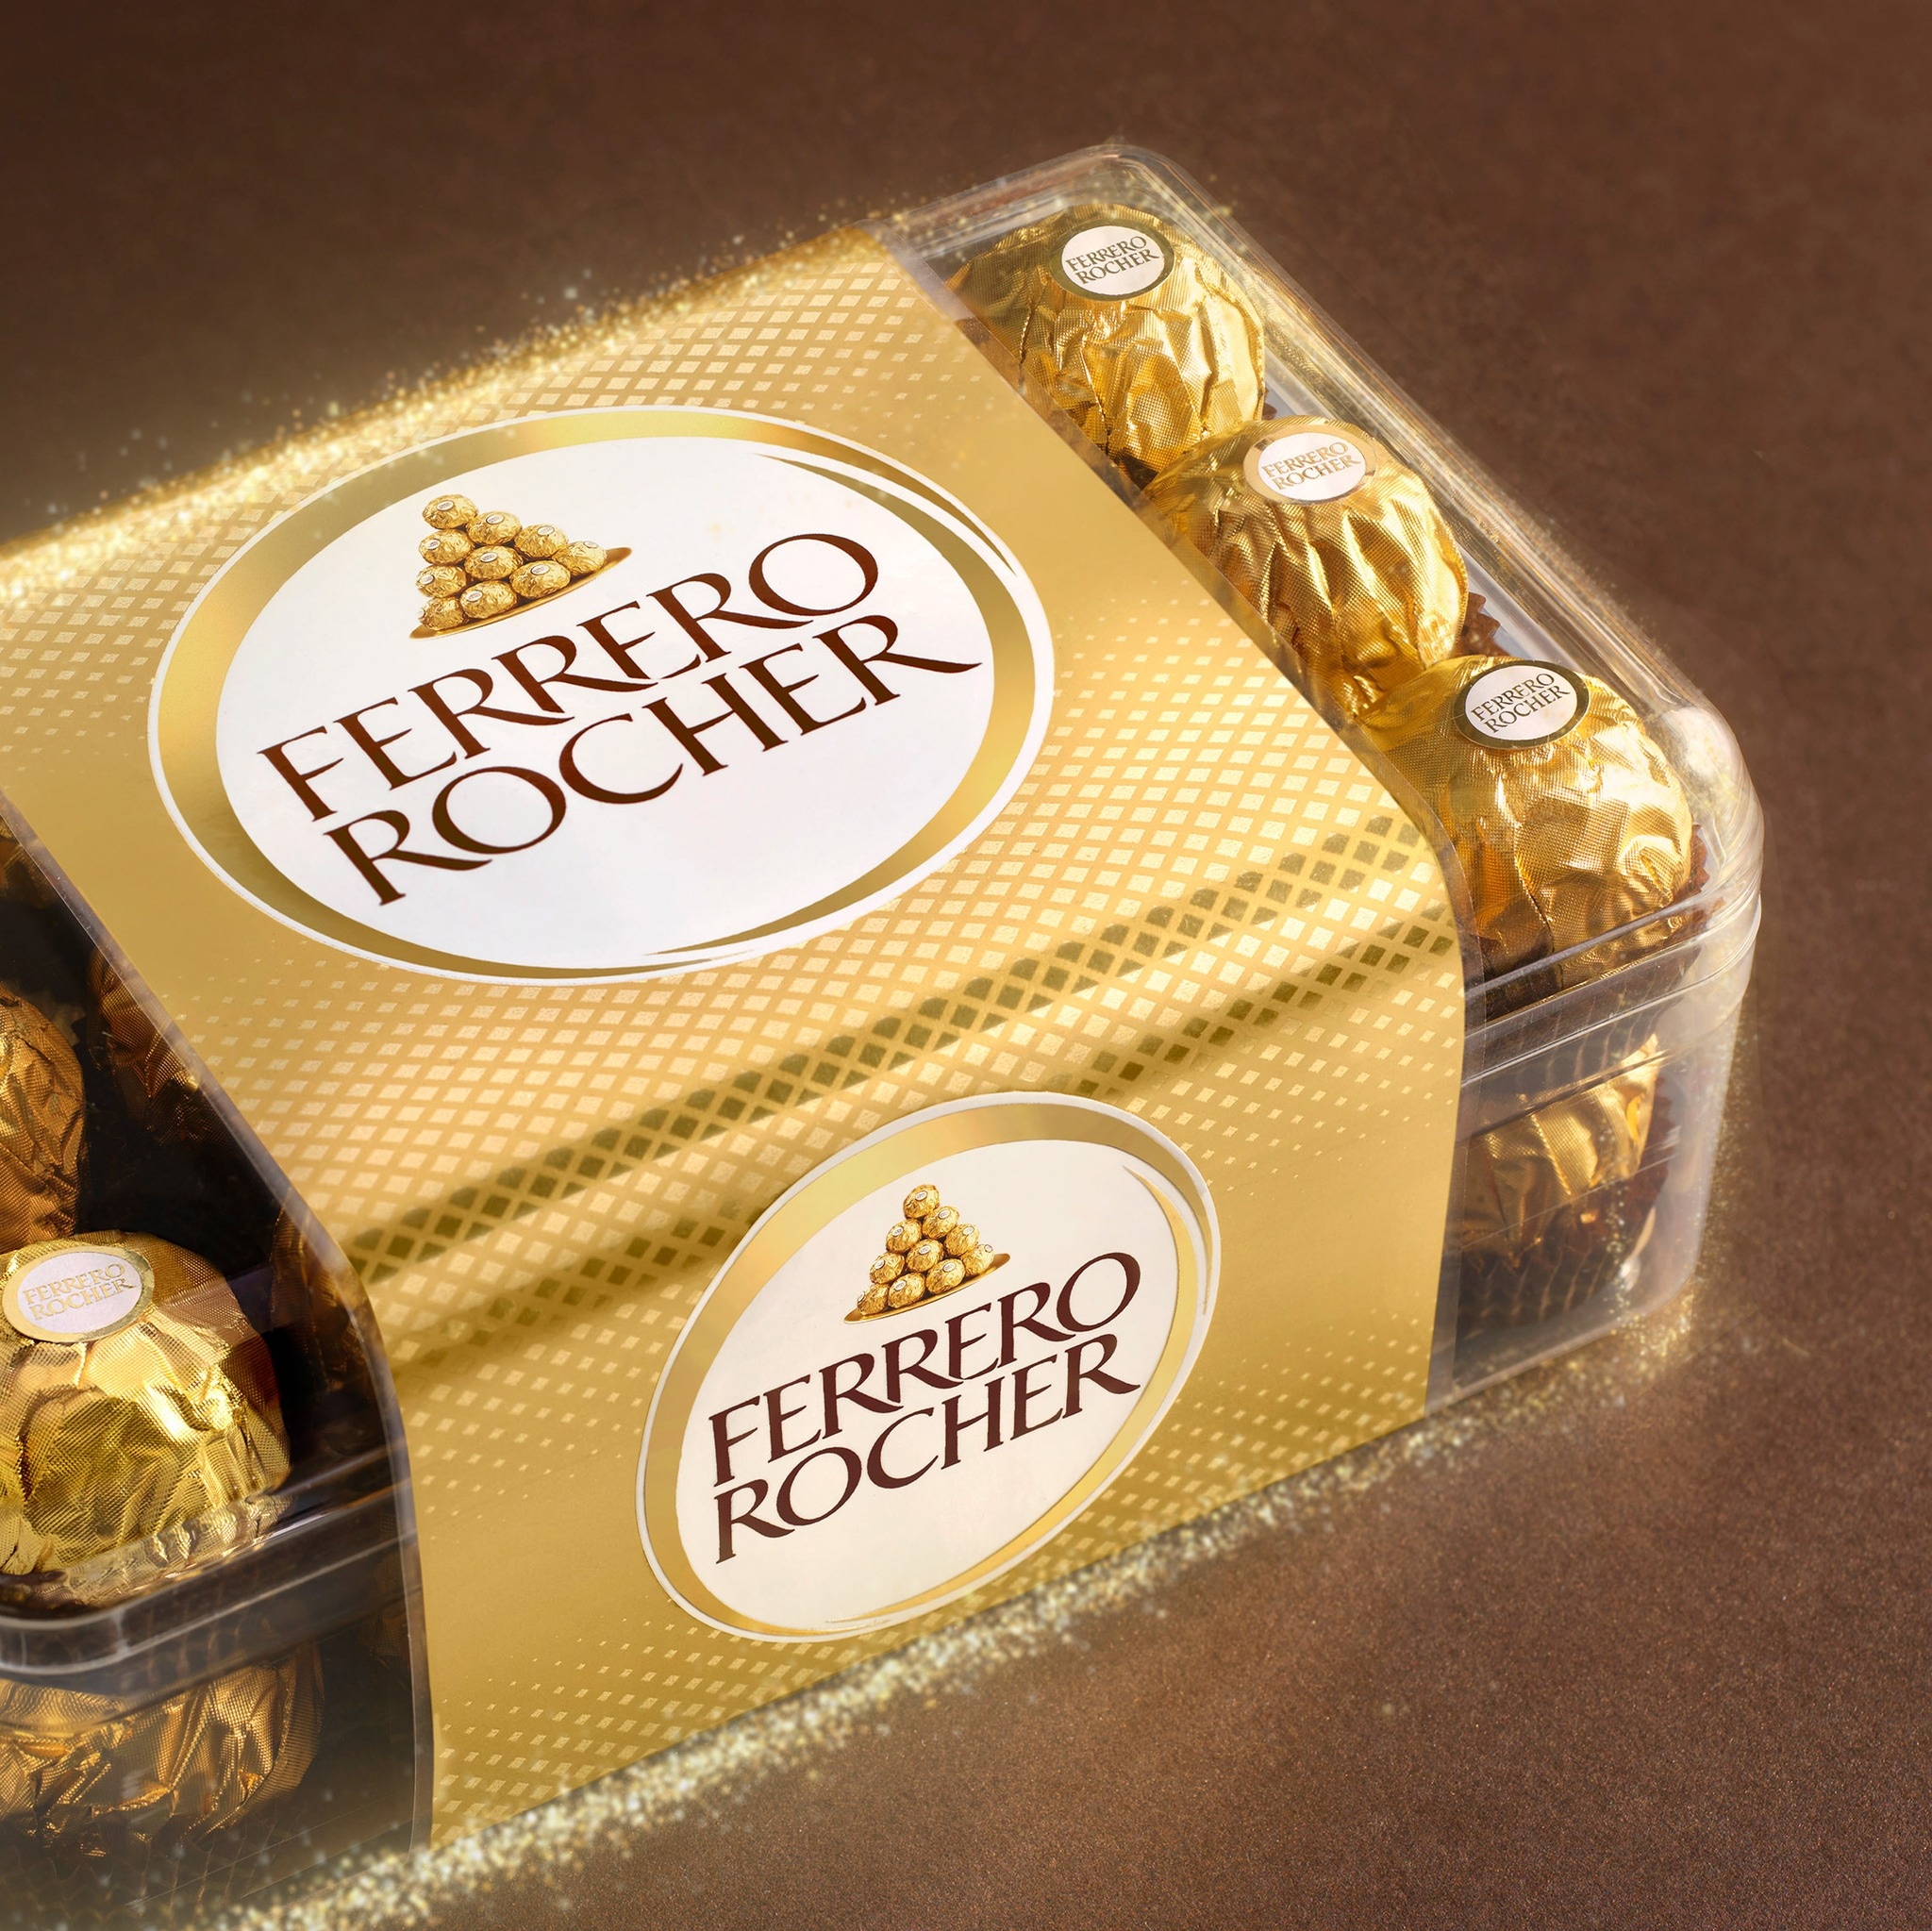 Tablette Ferrero Rocher chocolat au lait et noisettes